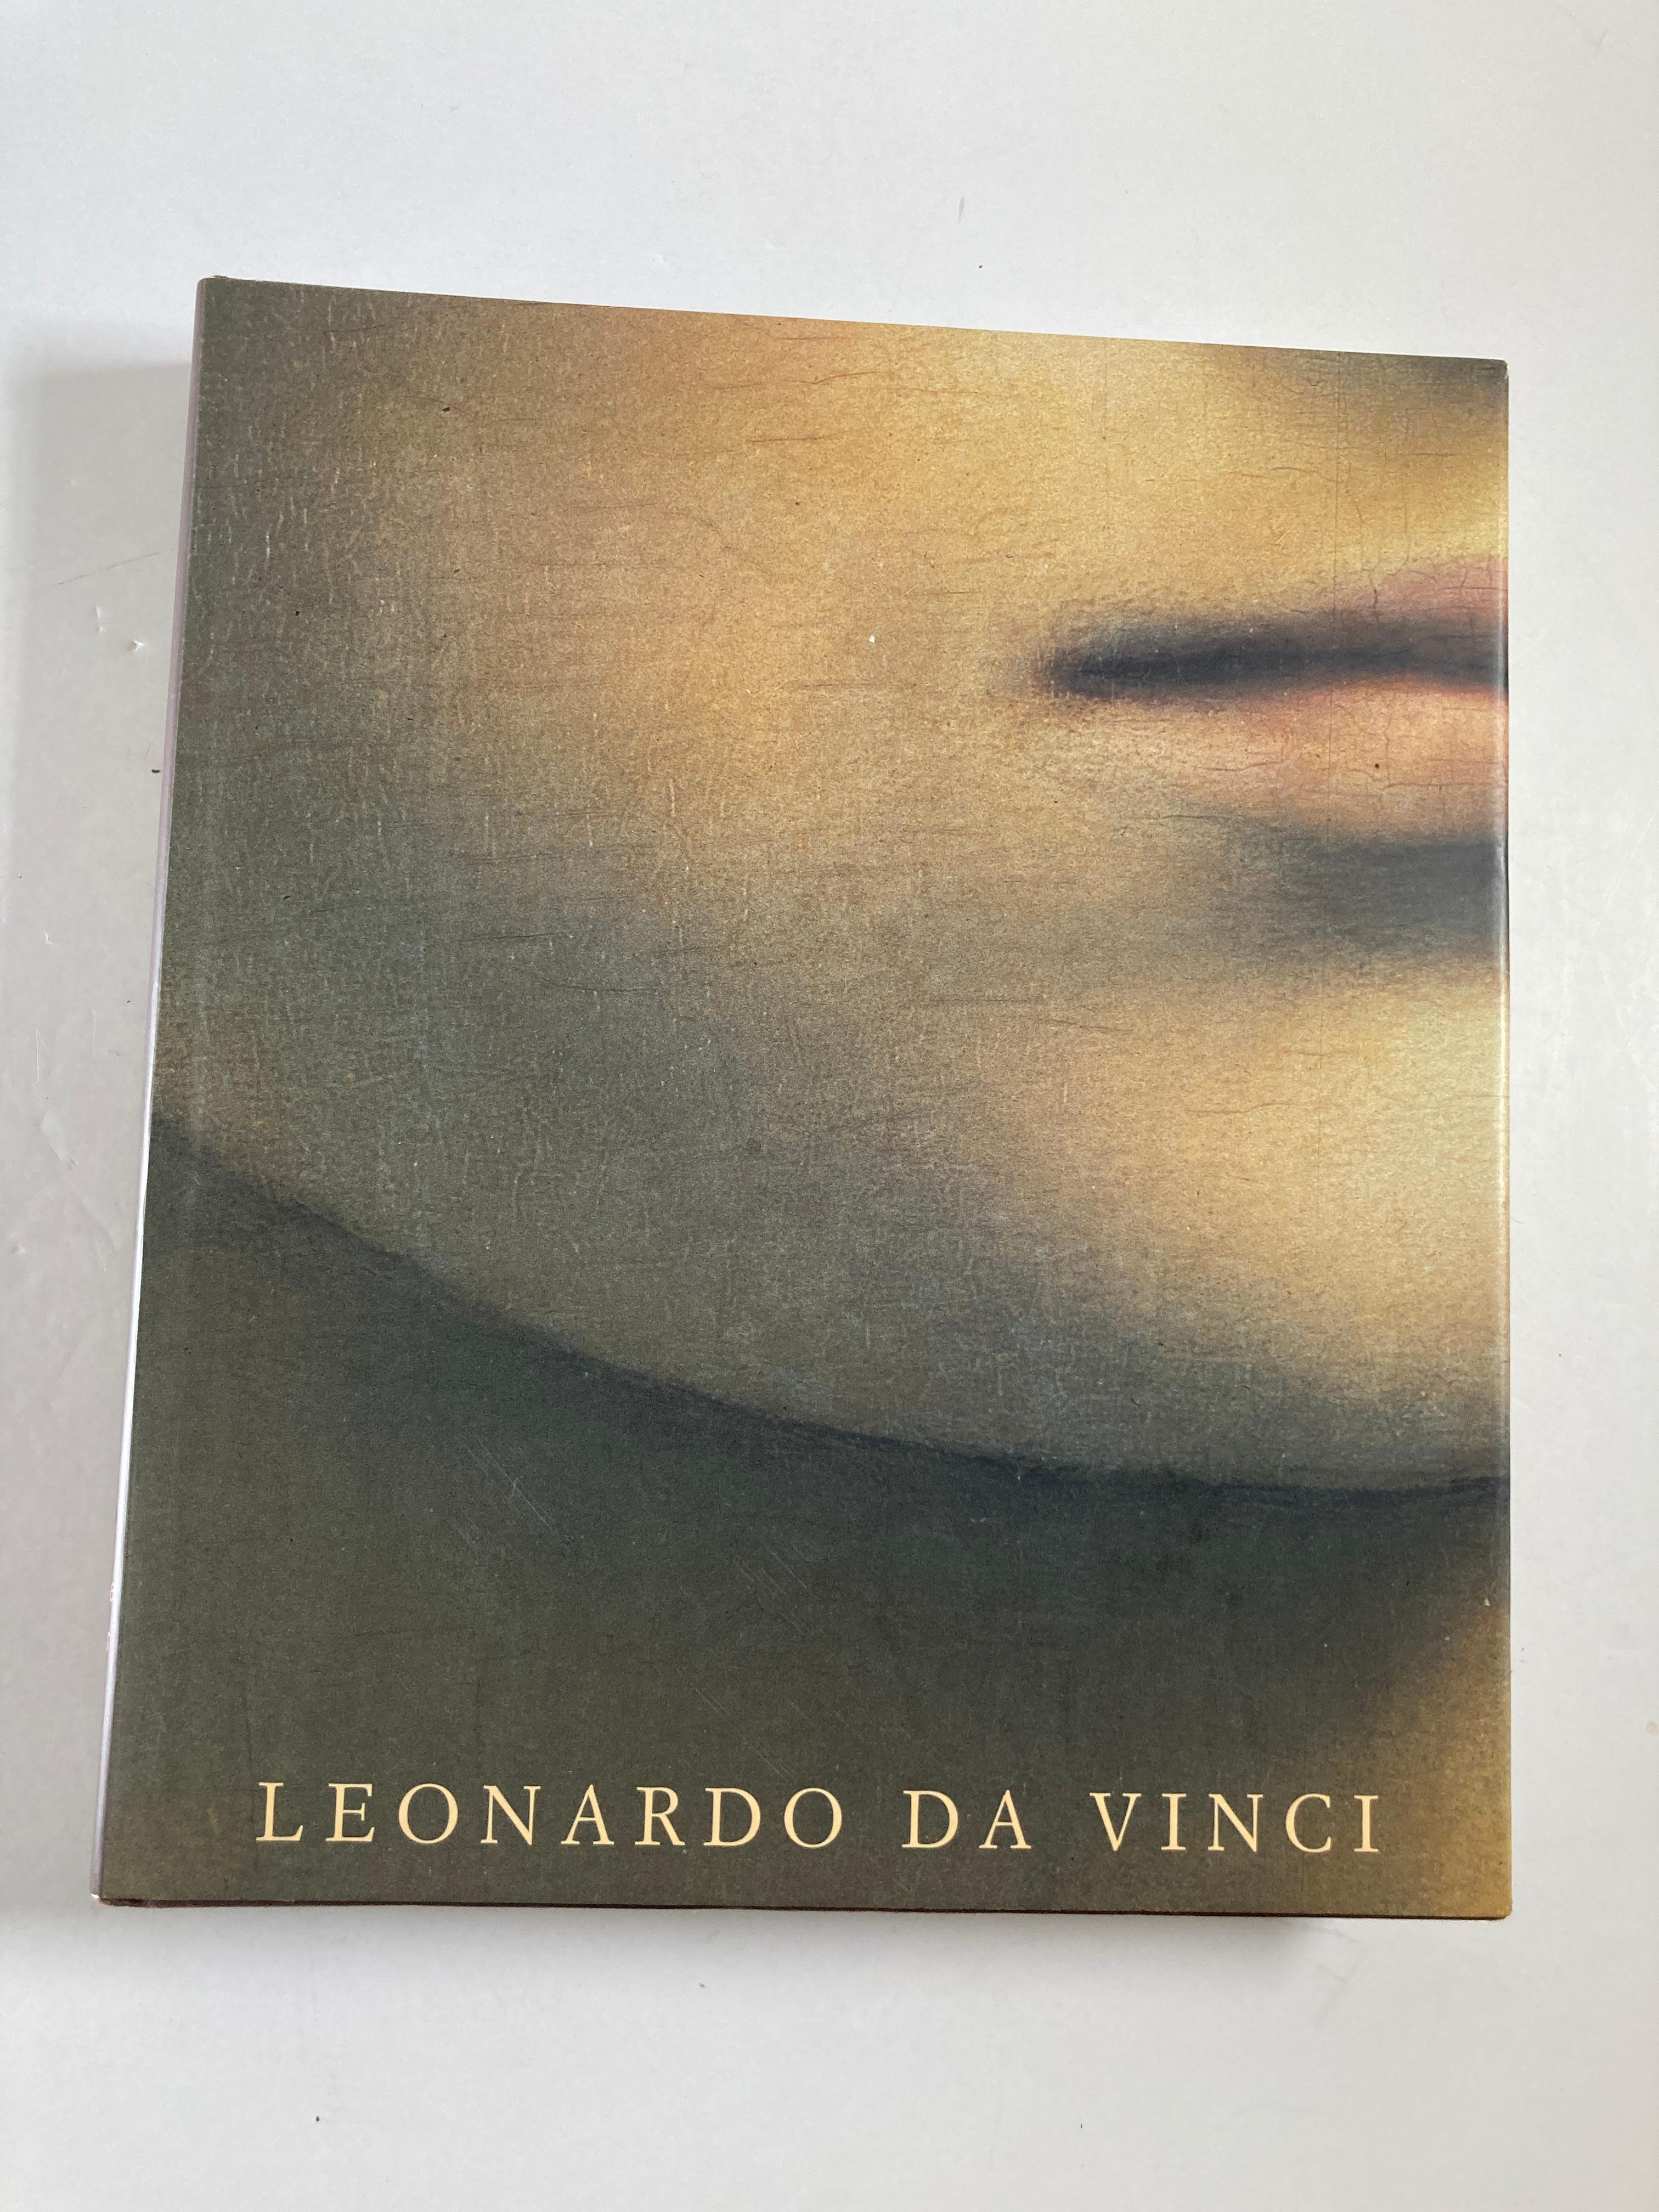 Leonardo da Vinci. Die vollständigen Gemälde.
Buch von Pietro Marani
Da Vinci im Detail: Leonardos Leben und Werk, alle Gemälde.
Leonardo da Vinci (1452 - 1519), einer der vollkommensten Menschen, die je gelebt haben, ist auf der ganzen Welt als